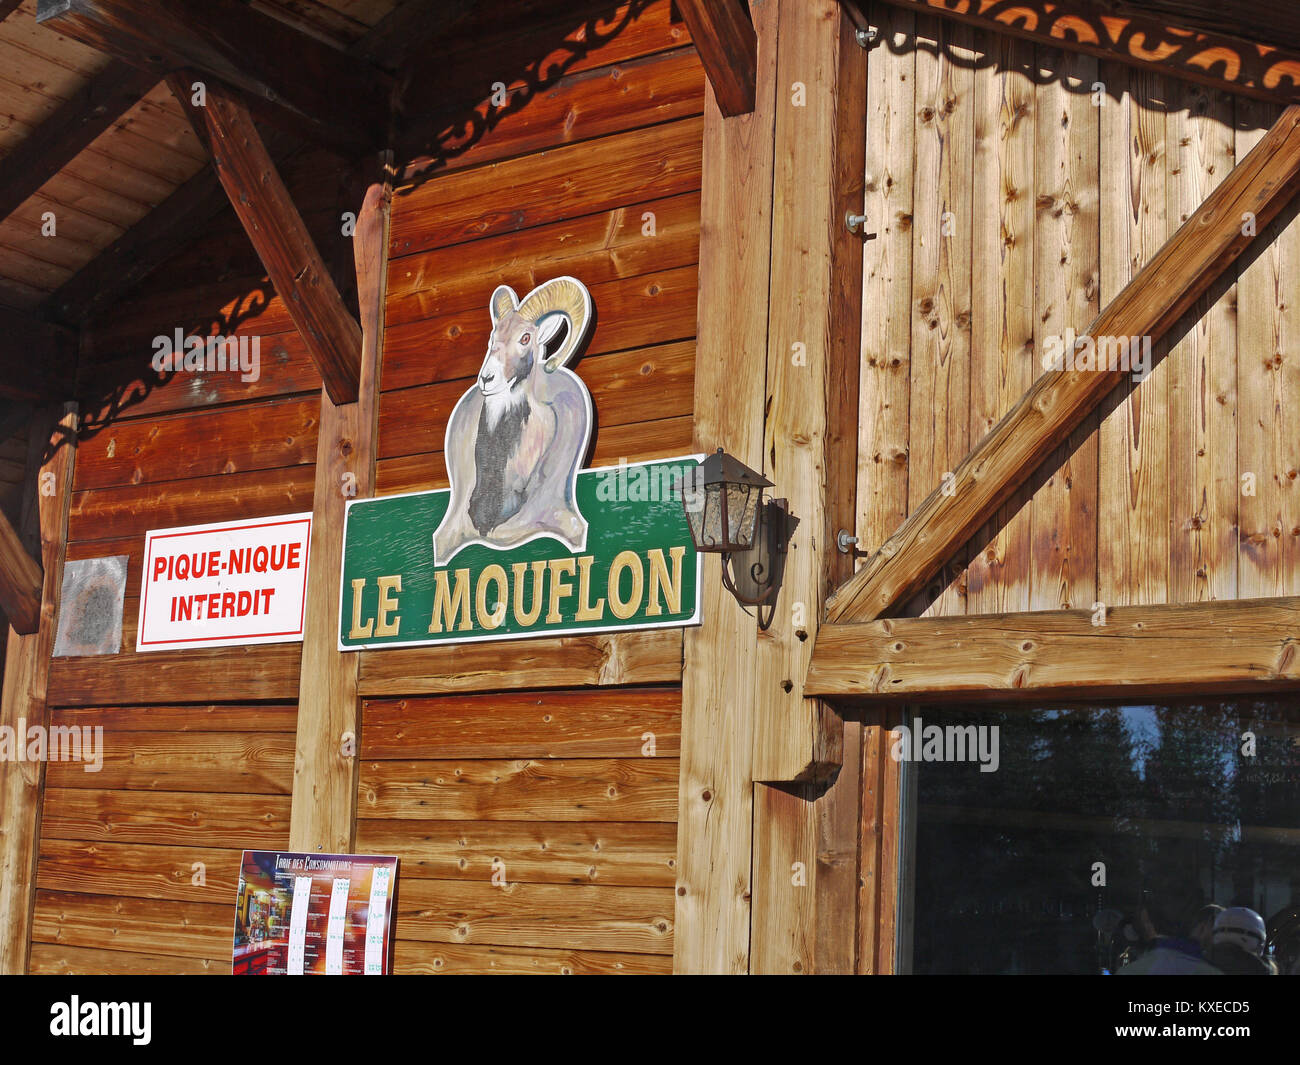 Le Mouflon restaurant on the pistes of Les Gets, France Stock Photo